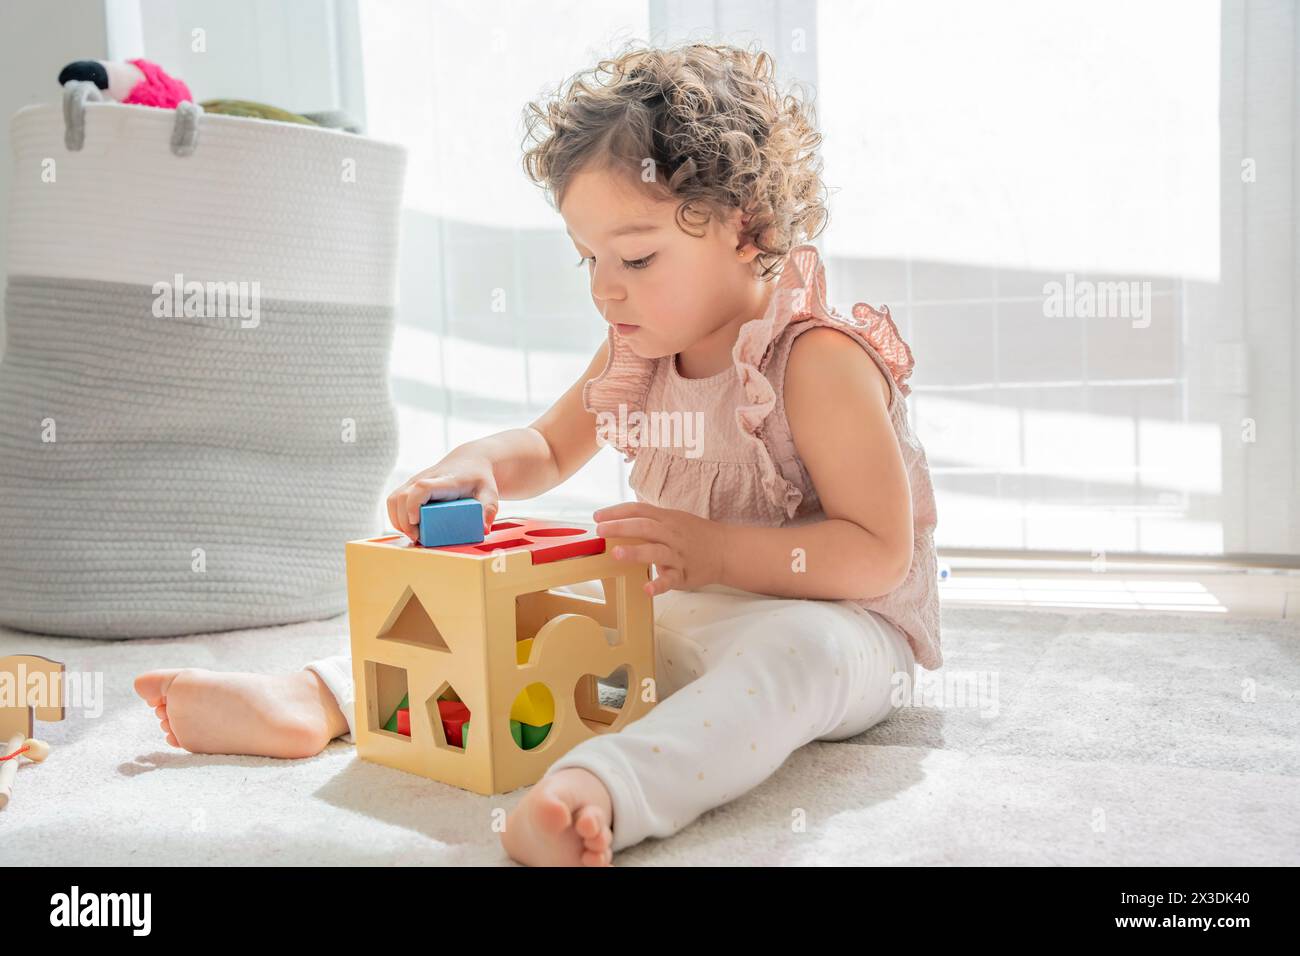 mignonne petite fille avec des cheveux bouclés assis sur le sol jouant avec cube de pièces colorées en bois et des formes. matériaux montessori. concepteurs de concepts Banque D'Images